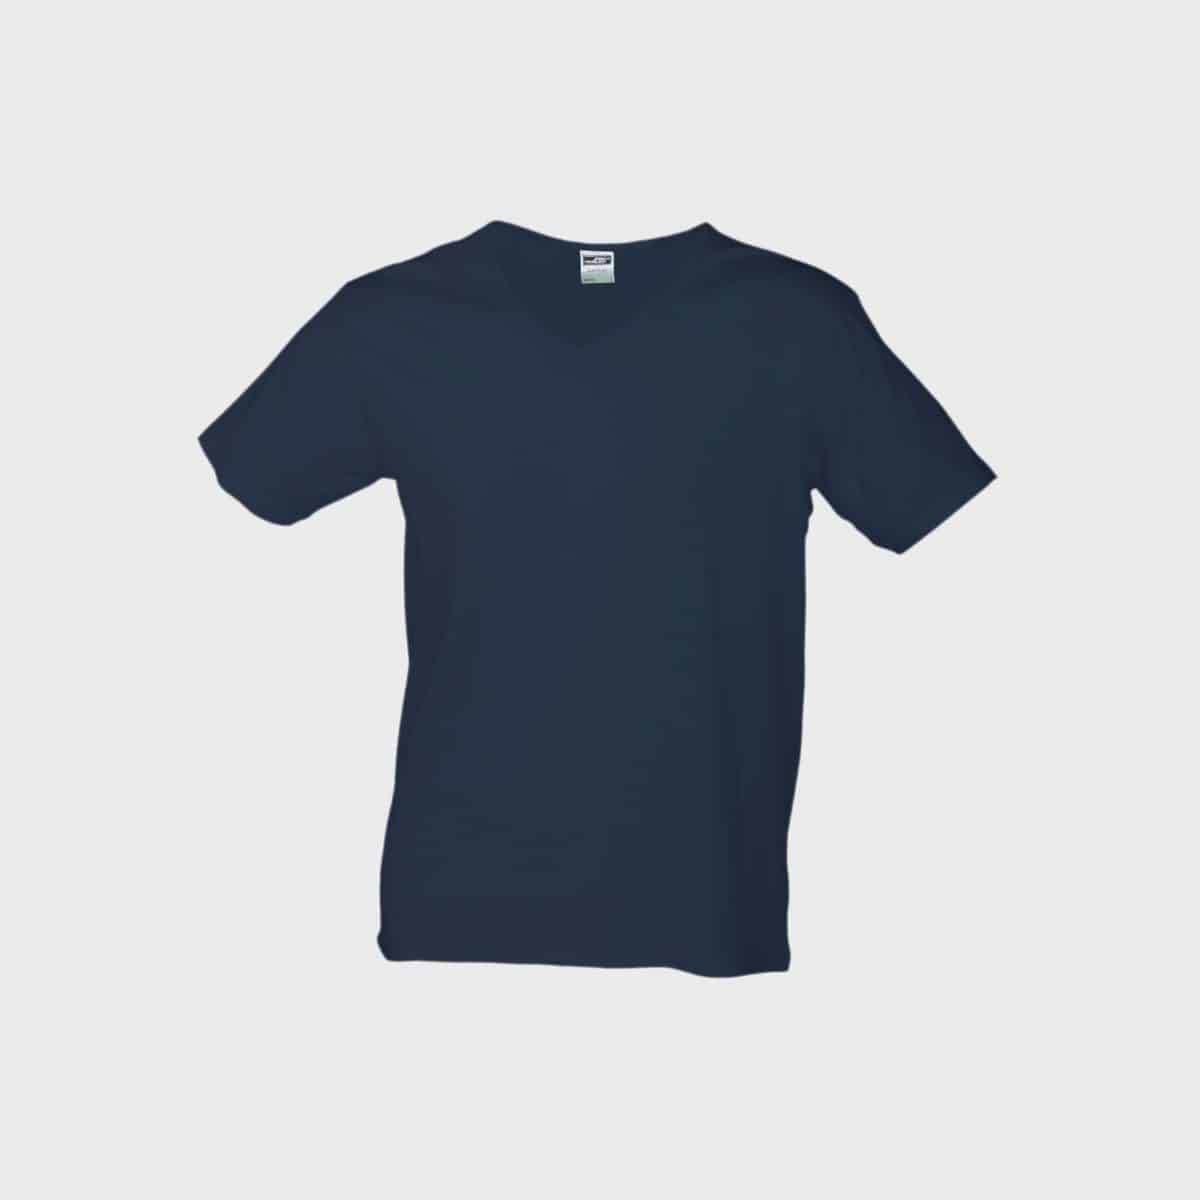 slim-fit-cotton-t-shirt-herren-navy-kaufen-besticken_stickmanufaktur